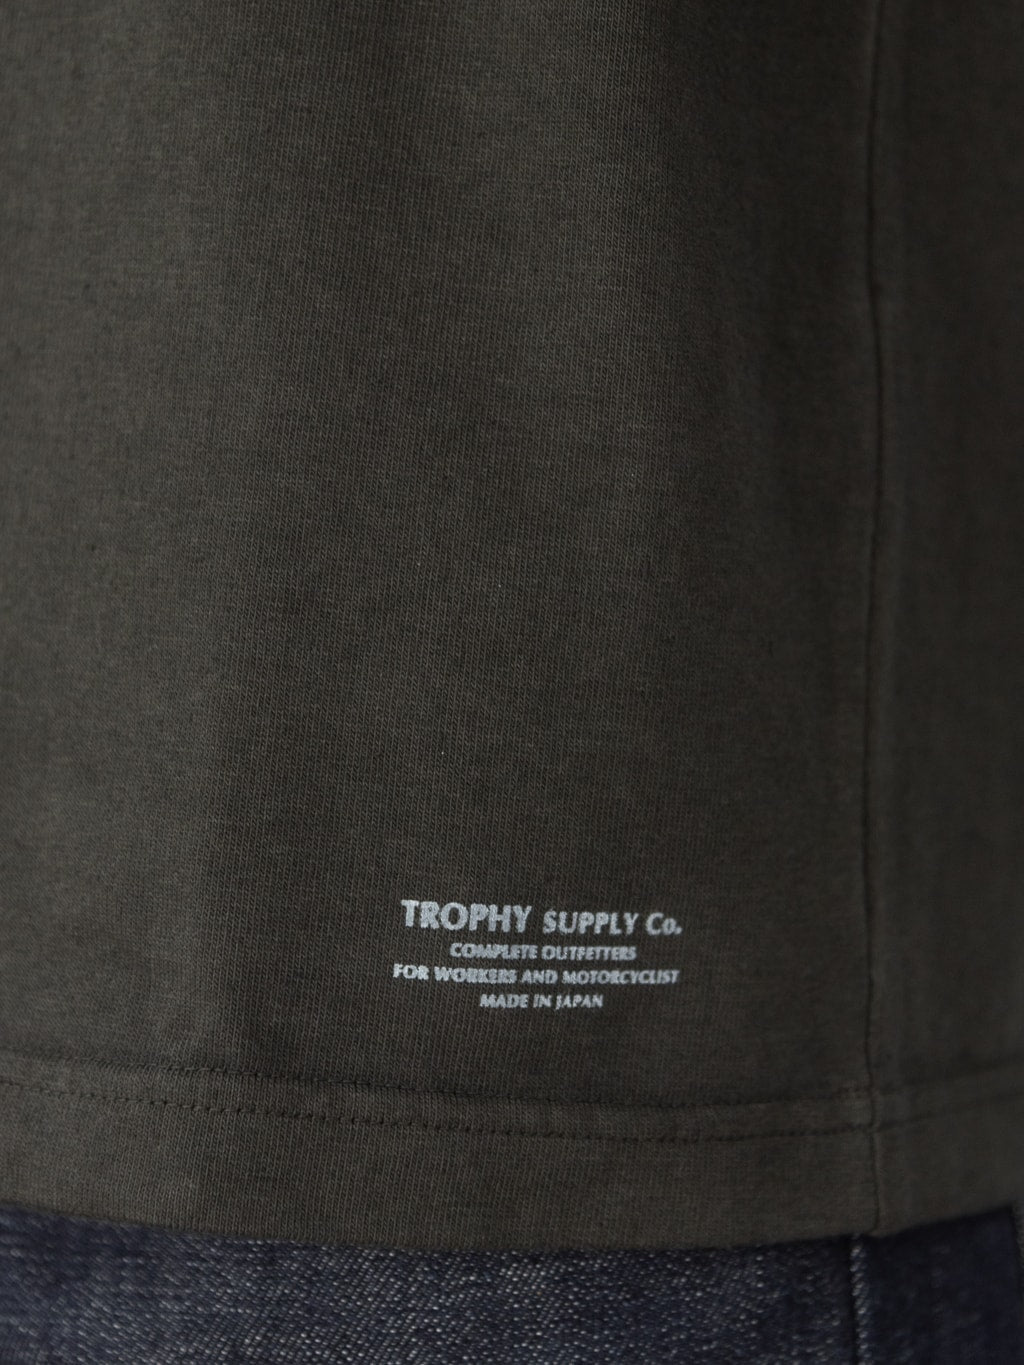 trophy clothing od pocket tee black printed branding hem